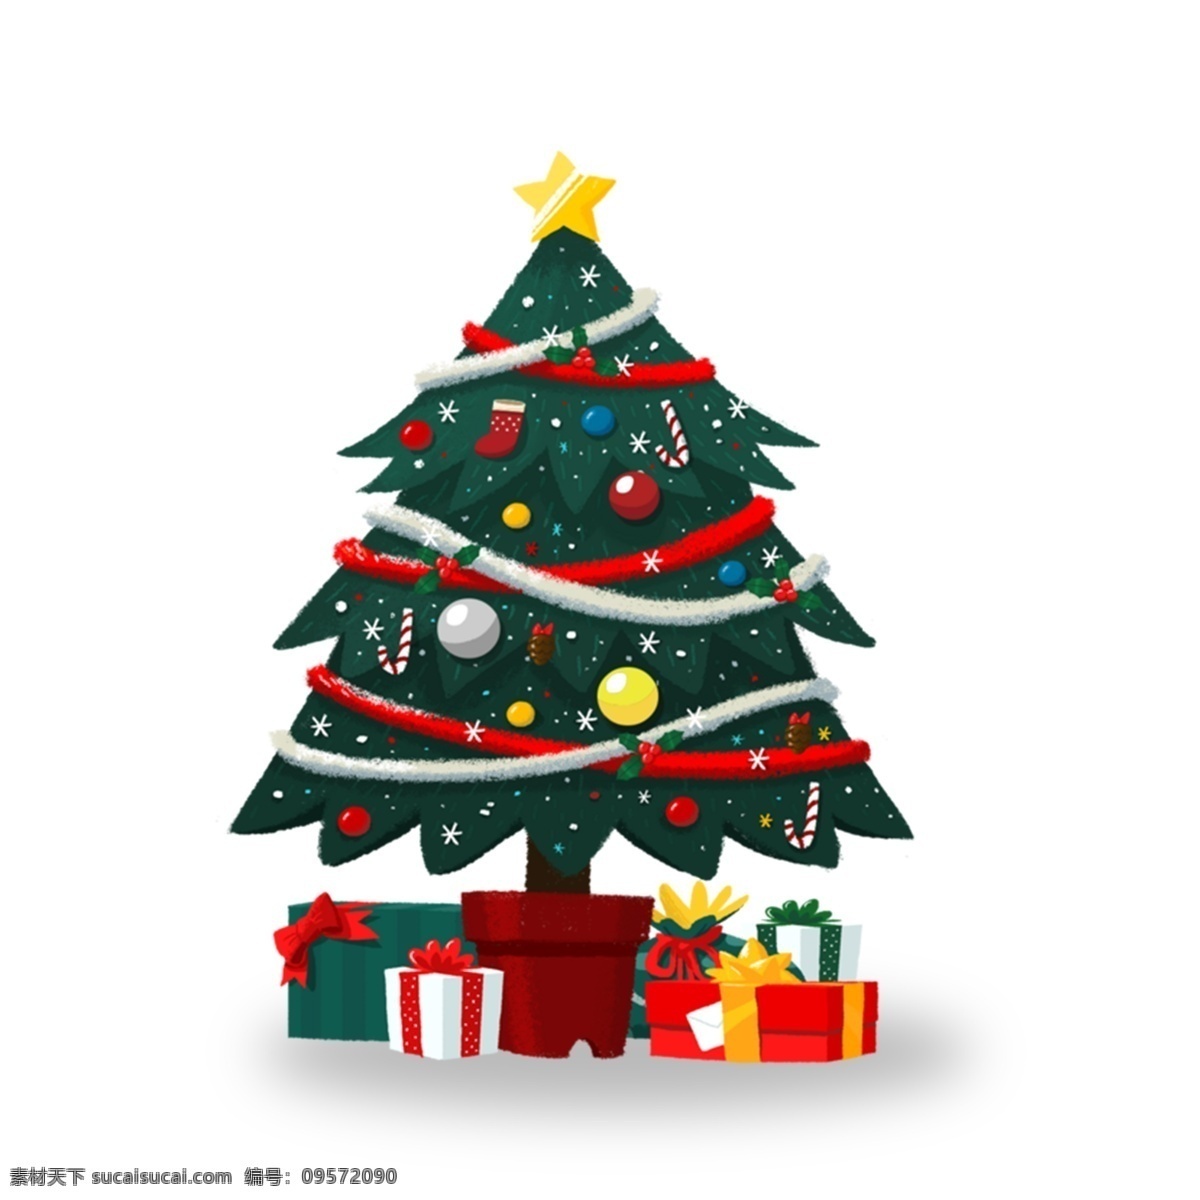 简约 圣诞树 圣诞 礼物 元素 圣诞节 节日礼物 圣诞礼物 节日元素 手绘 元素装饰 元素设计 psd元素